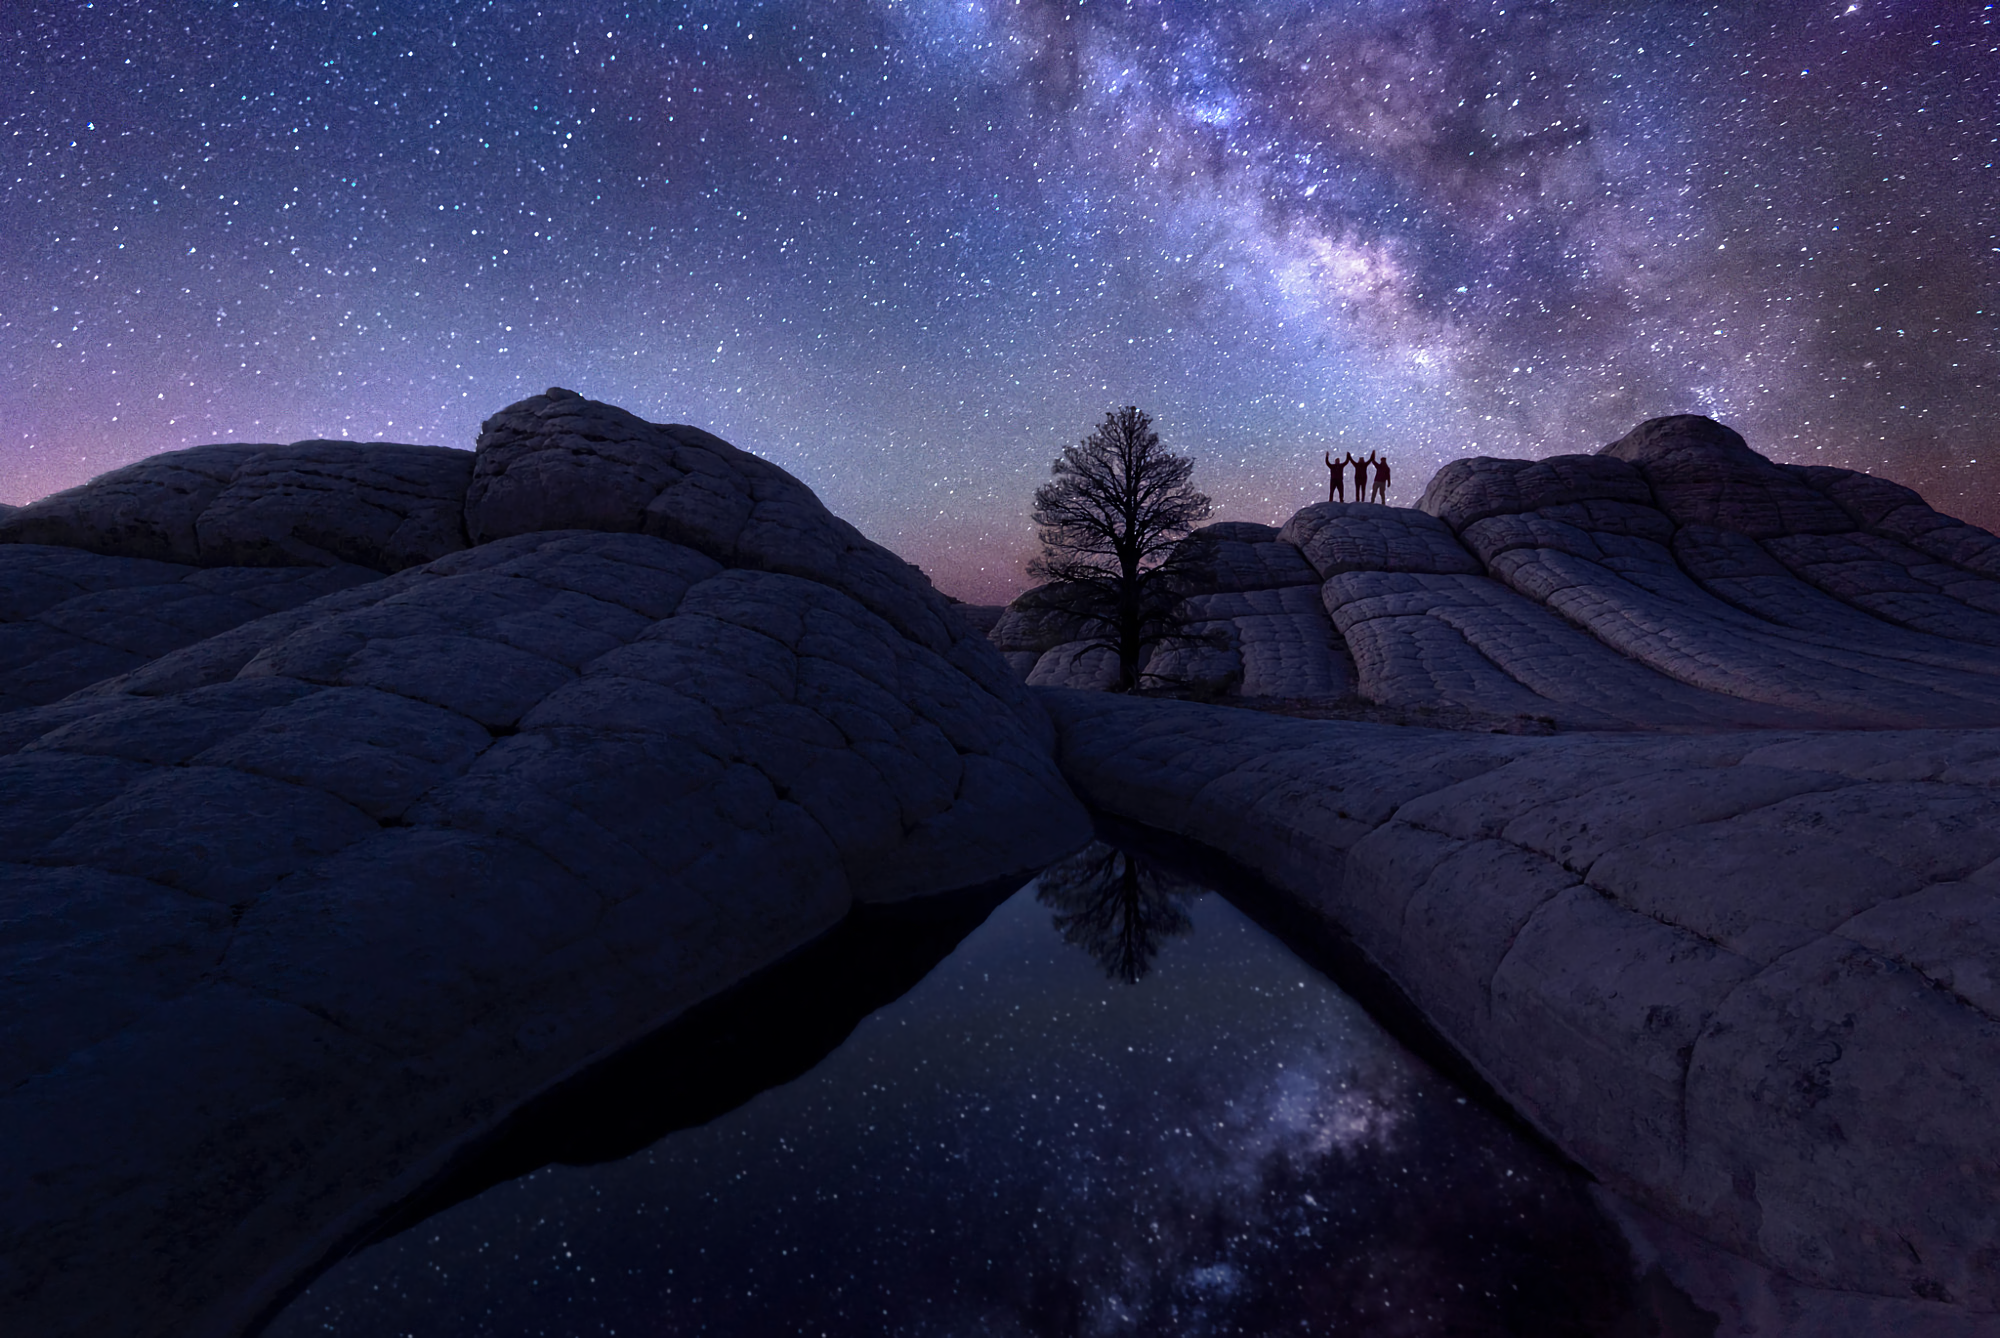 Milky Way Night Sky by Bryan Szucs